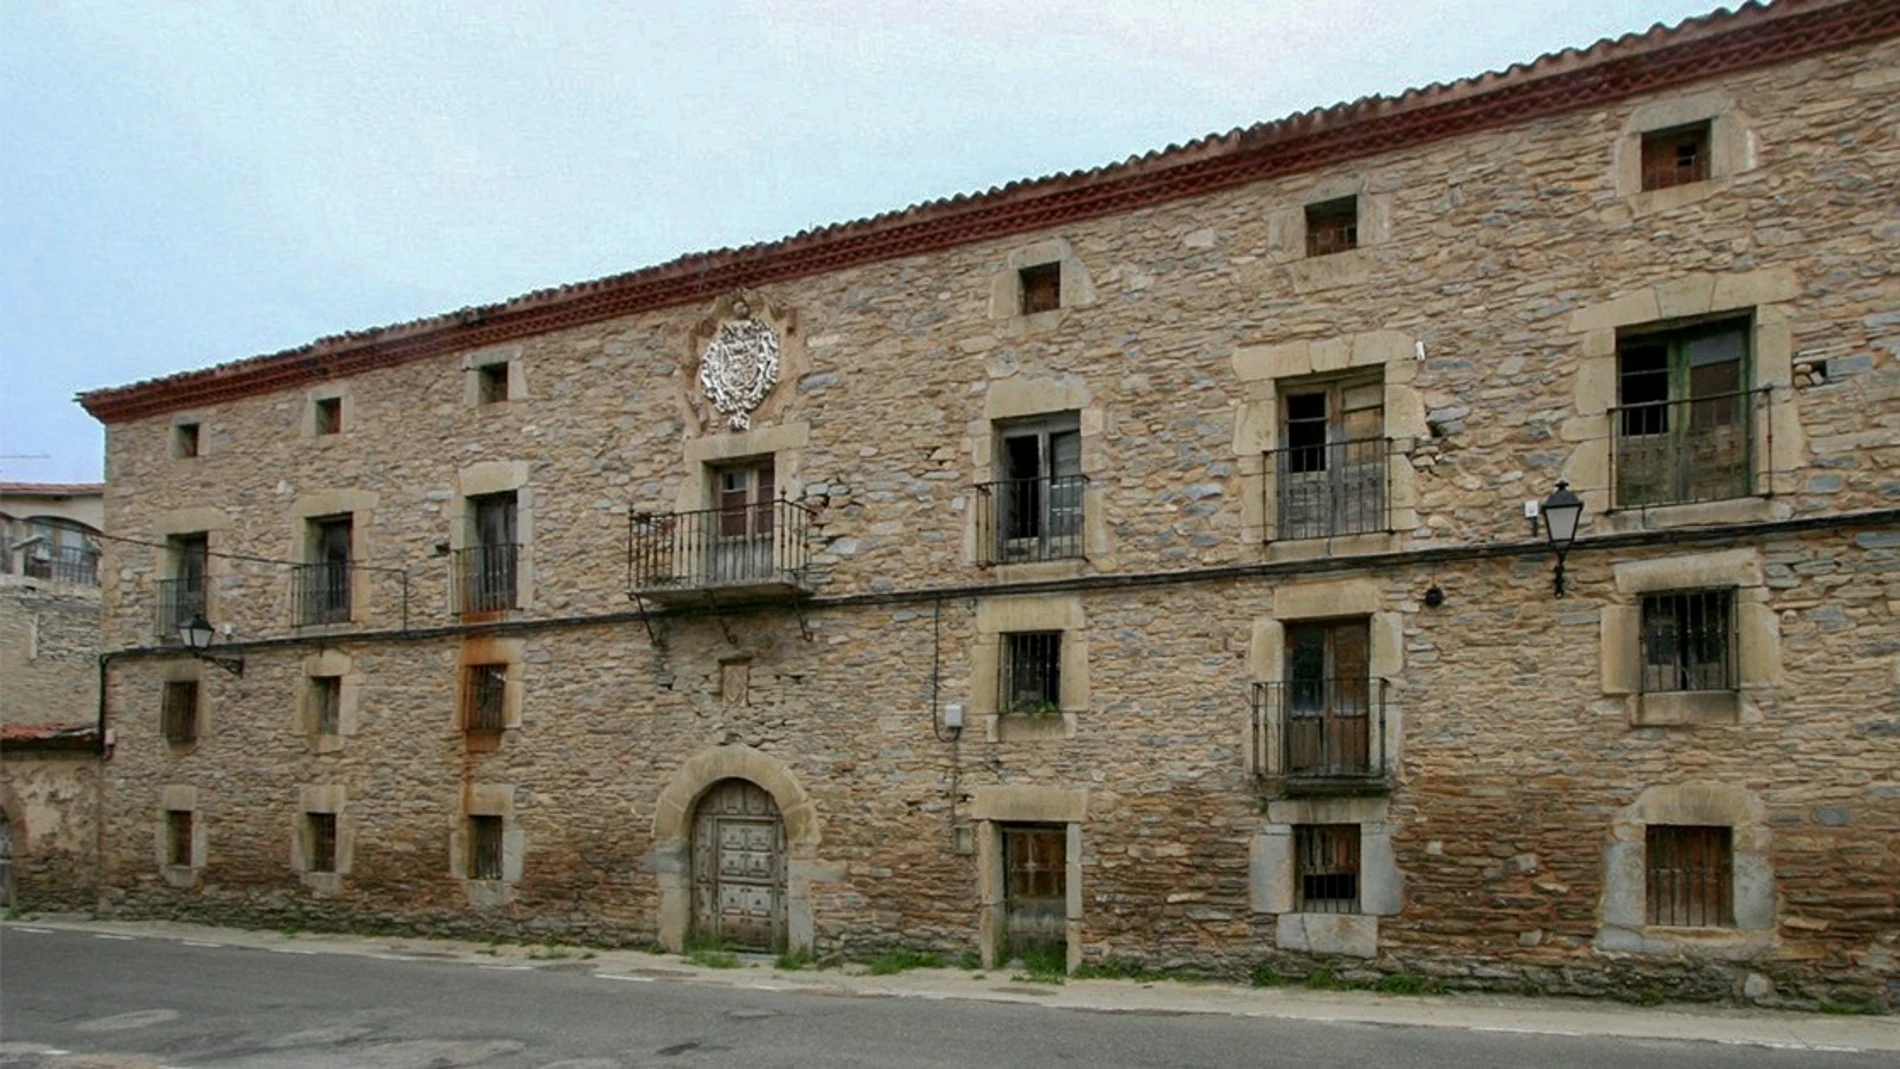 Palacio de Cerceda de Yanguas (Soria)